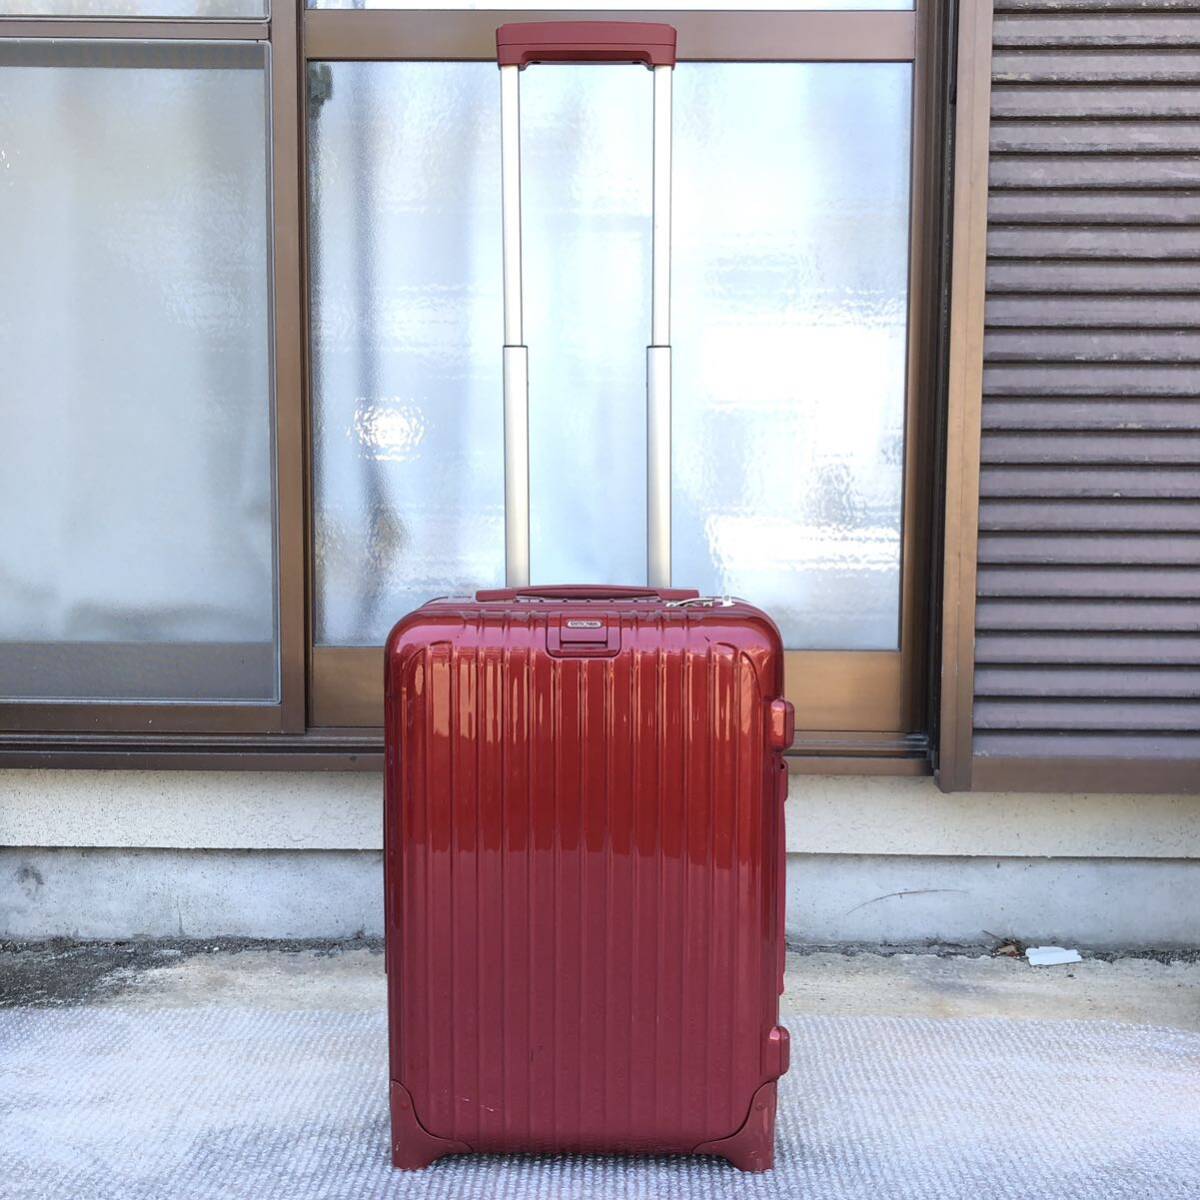 [ Rimowa ] подлинный товар RIMOWA чемодан SALSA DELUXE cальса Deluxe 853 52 TSA блокировка 2 колесо Carry кейс 35L красный цвет серия путешествие сумка 